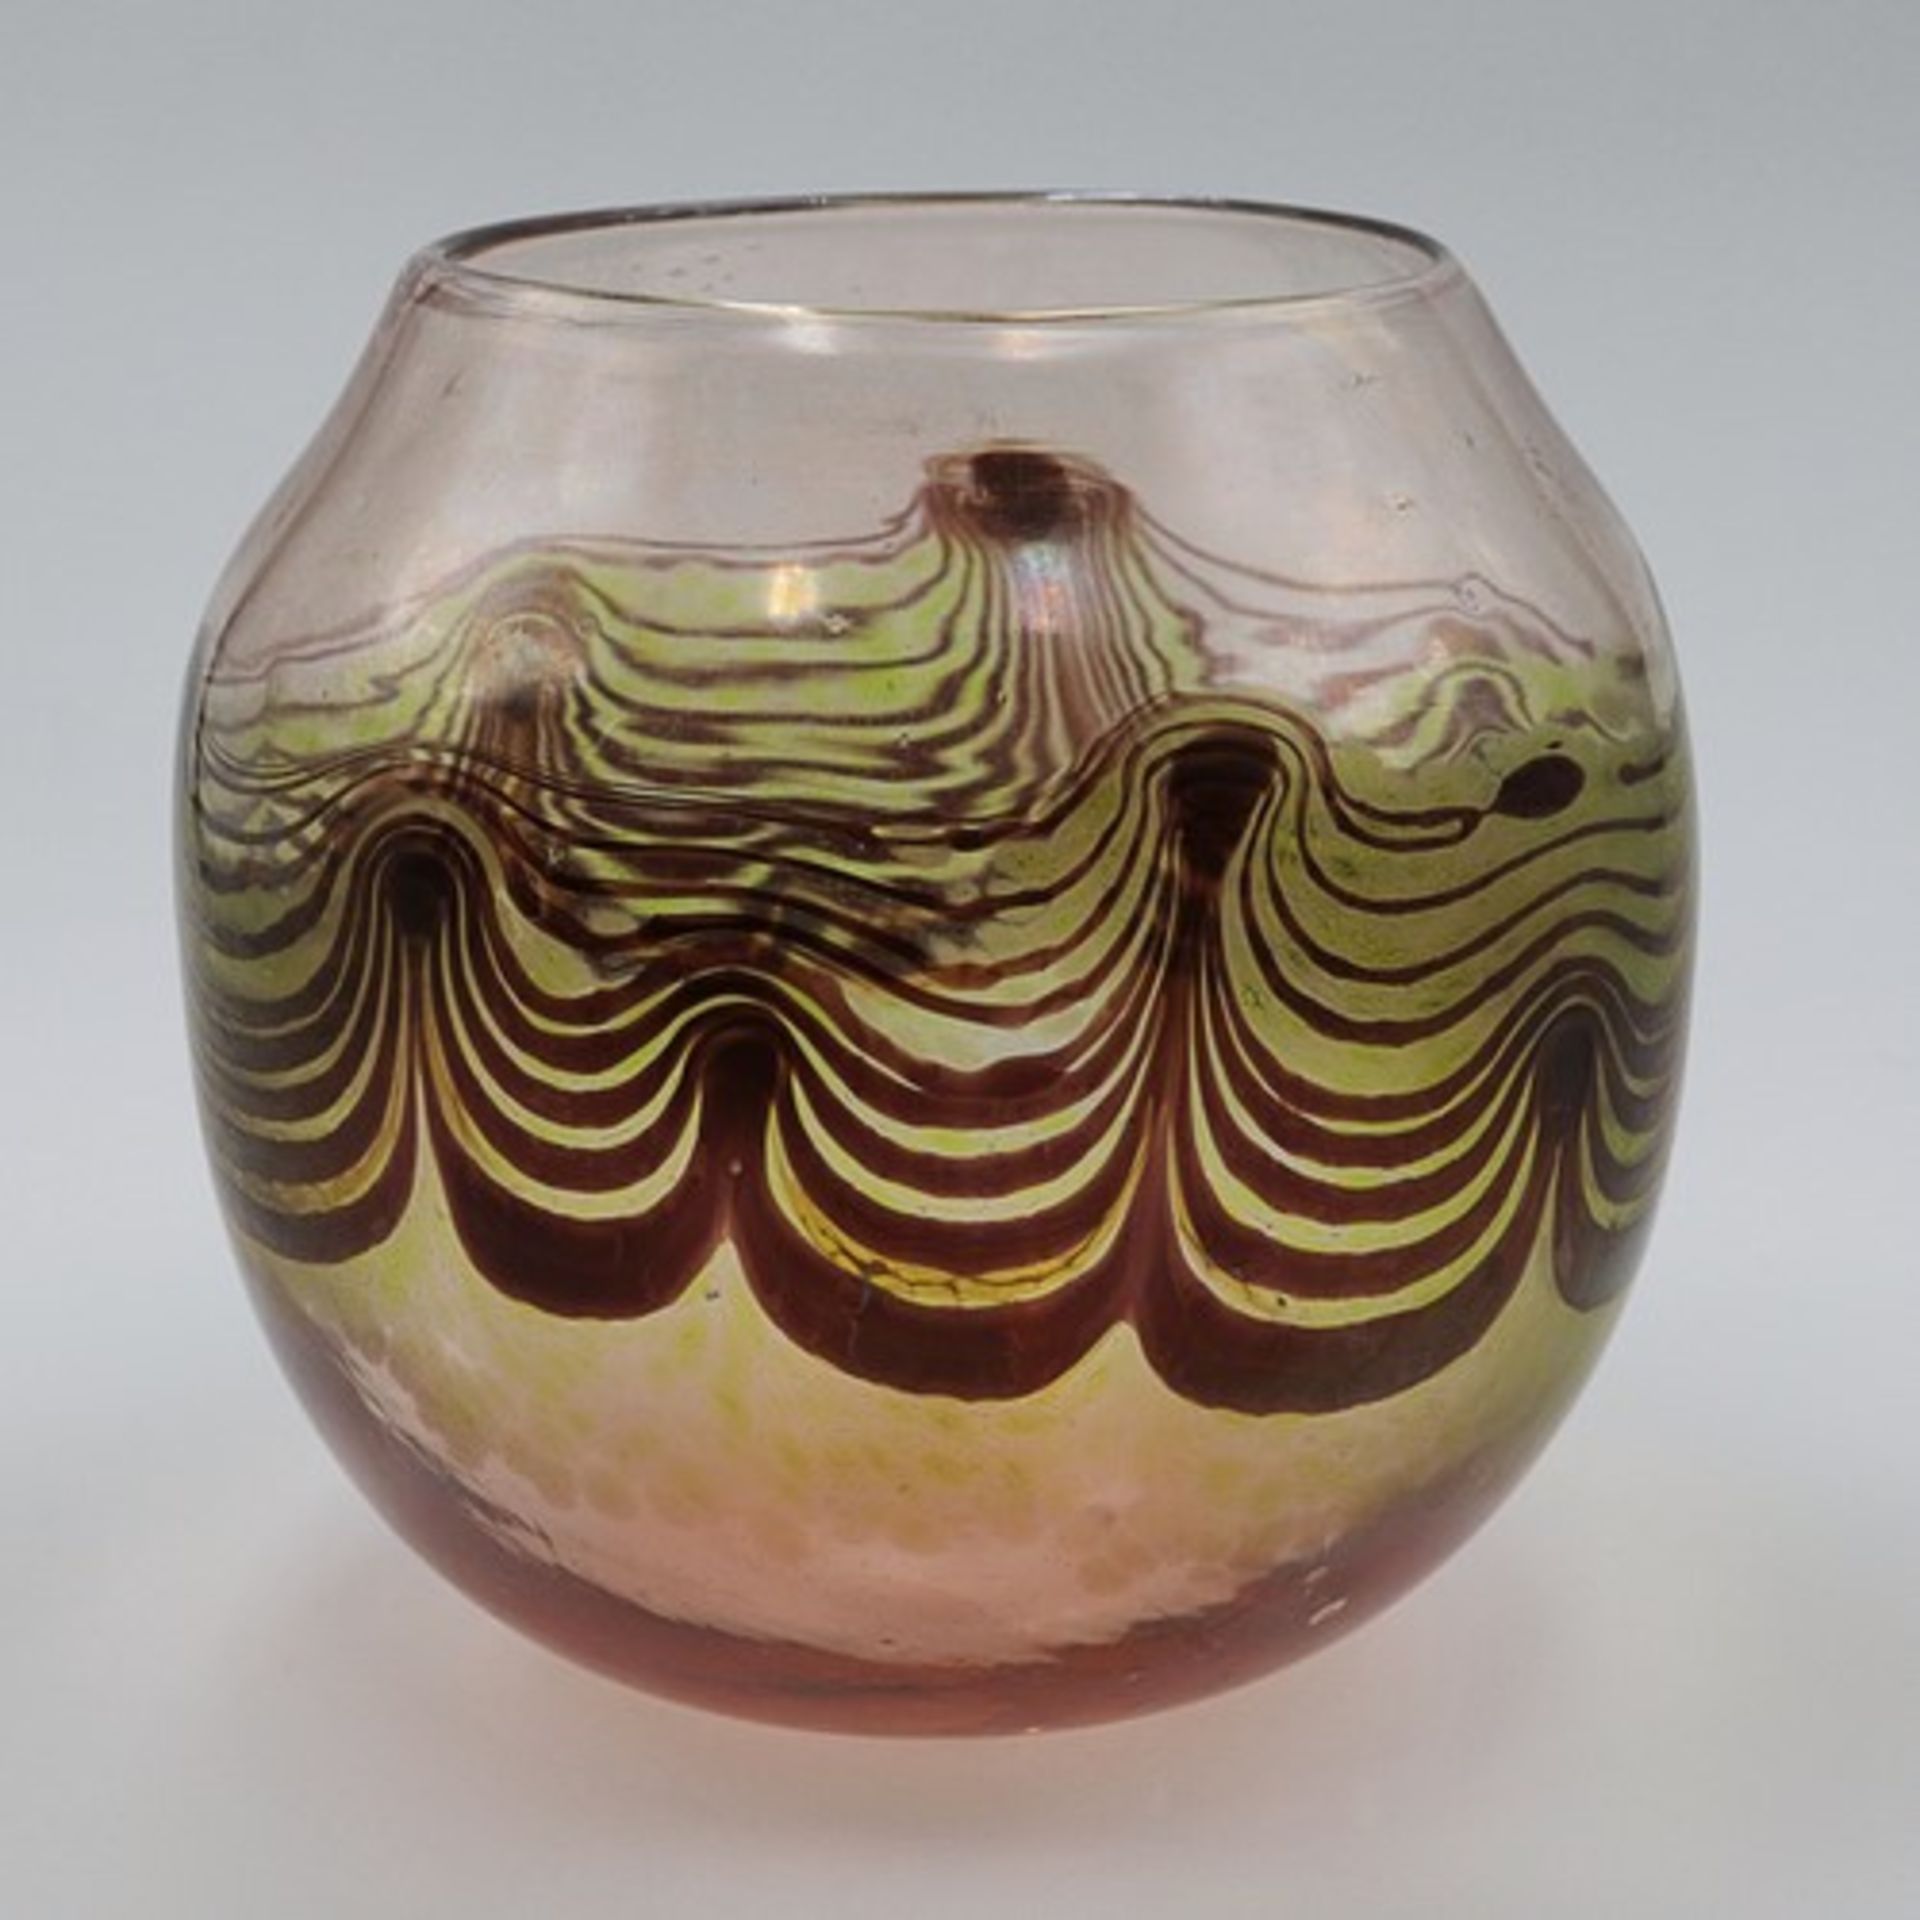 Studioglas - Vase1976, wohl Zwiesel, farbloses Glas, nach unten hin pfirsichfarbend verlaufend,